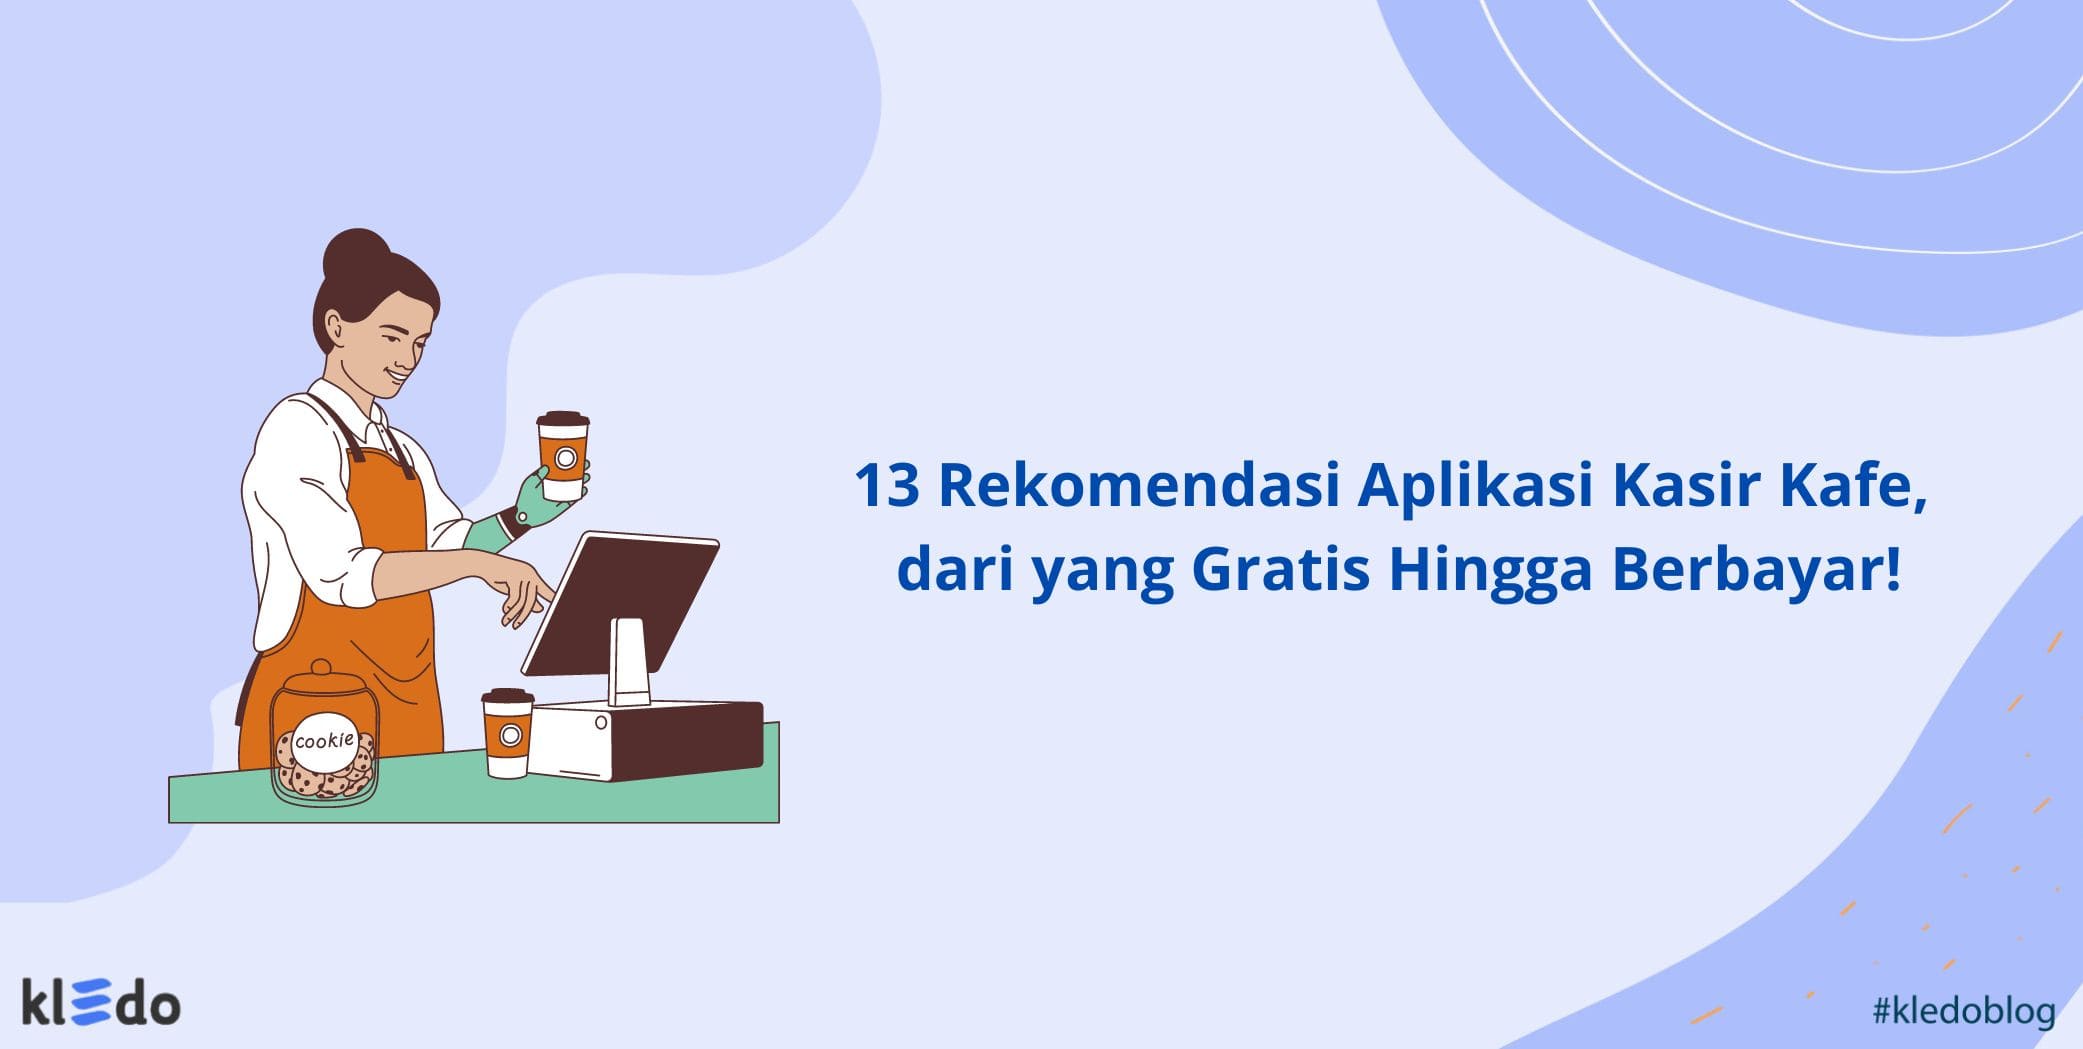 13 Rekomendasi Aplikasi Kasir Kafe, dari yang Gratis Hingga Berbayar!